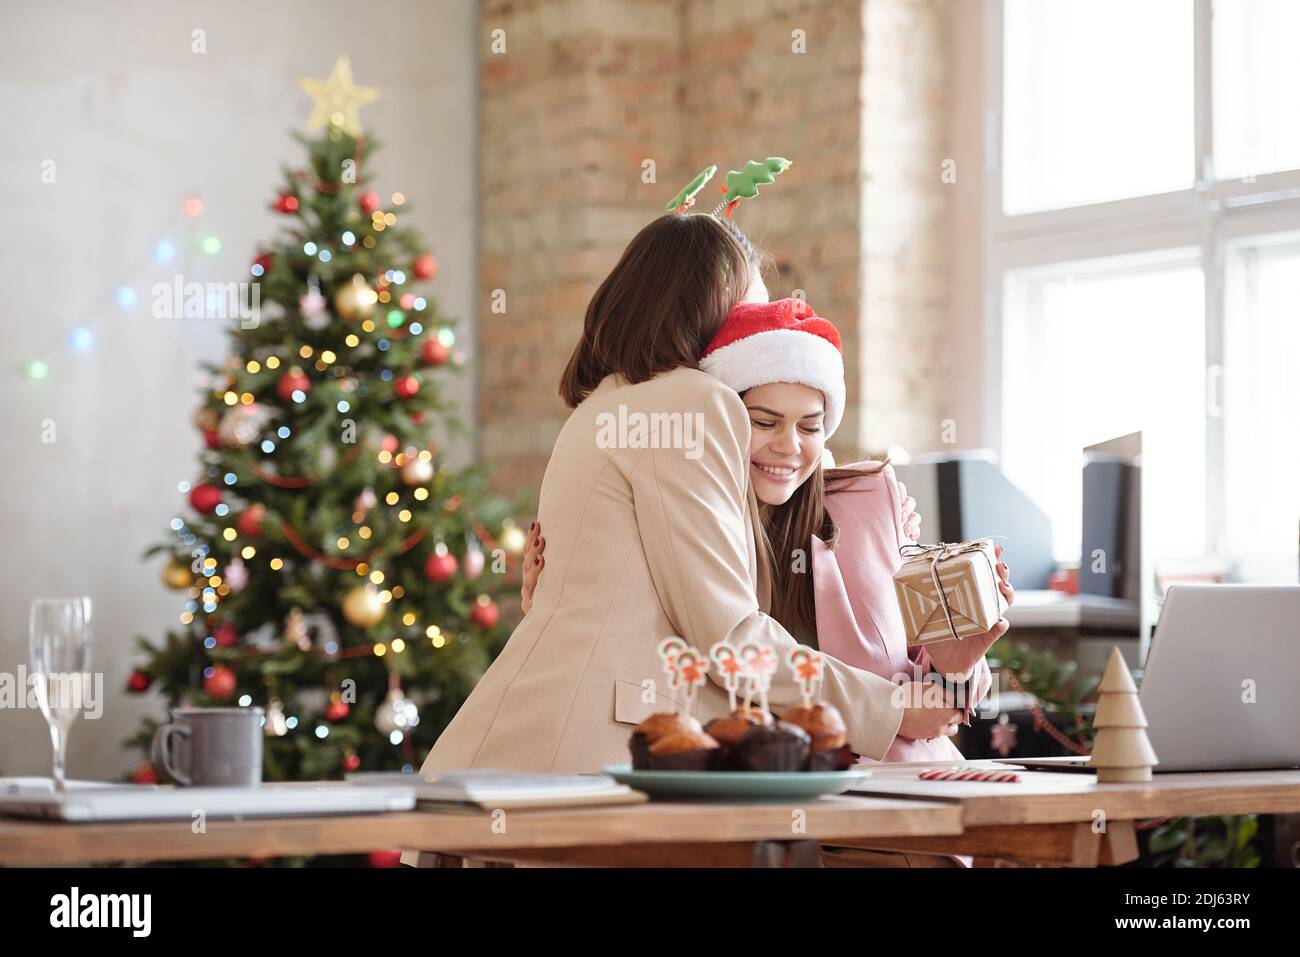 Une jeune femme d'affaires heureuse donne un câlin à sa collègue pendant Offrir un cadeau de Noël lors d'une fête d'entreprise dans un environnement de bureau Banque D'Images